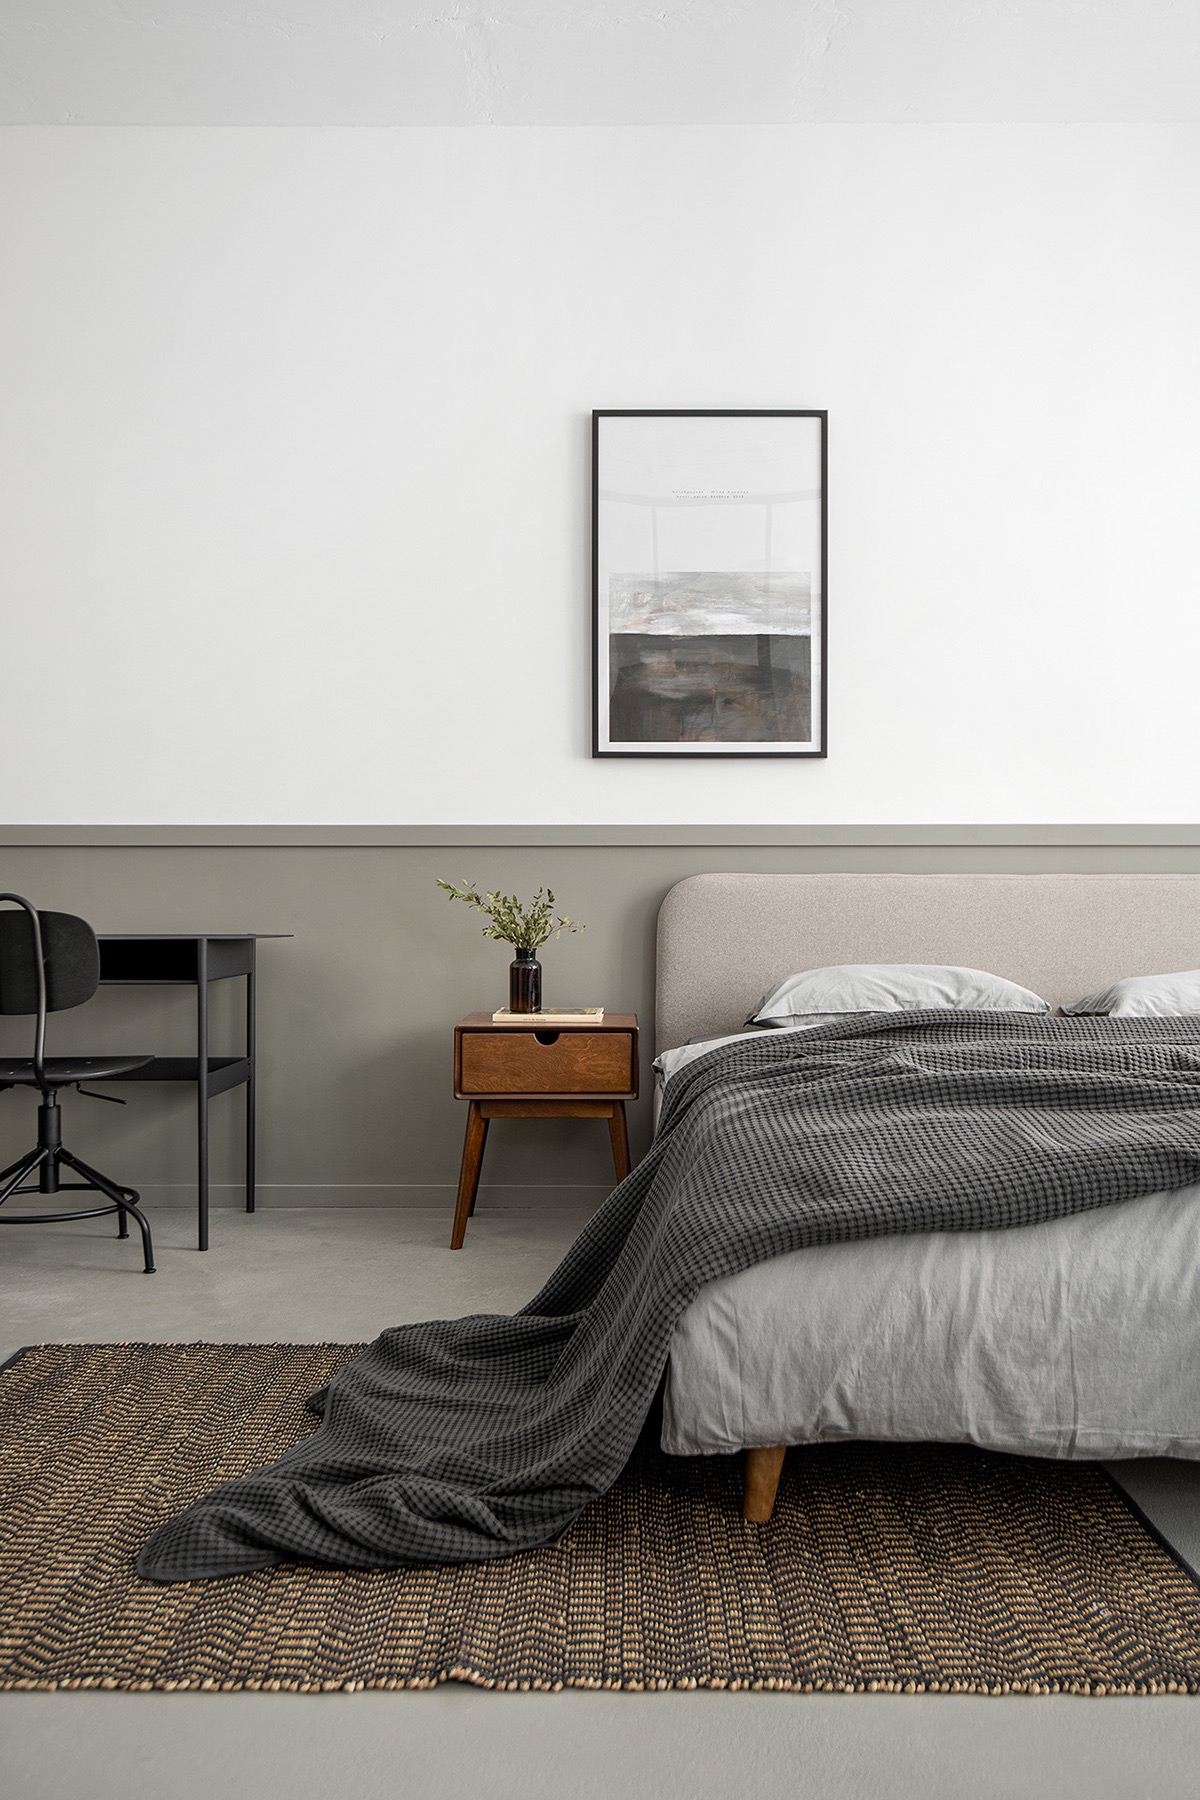 Bên trong phòng ngủ, chiếc giường lấy cảm hứng từ giữa thế kỷ được phủ lớp vỏ màu xám trung tính. Tấm thảm dệt tạo điểm nhấn ấm áp.